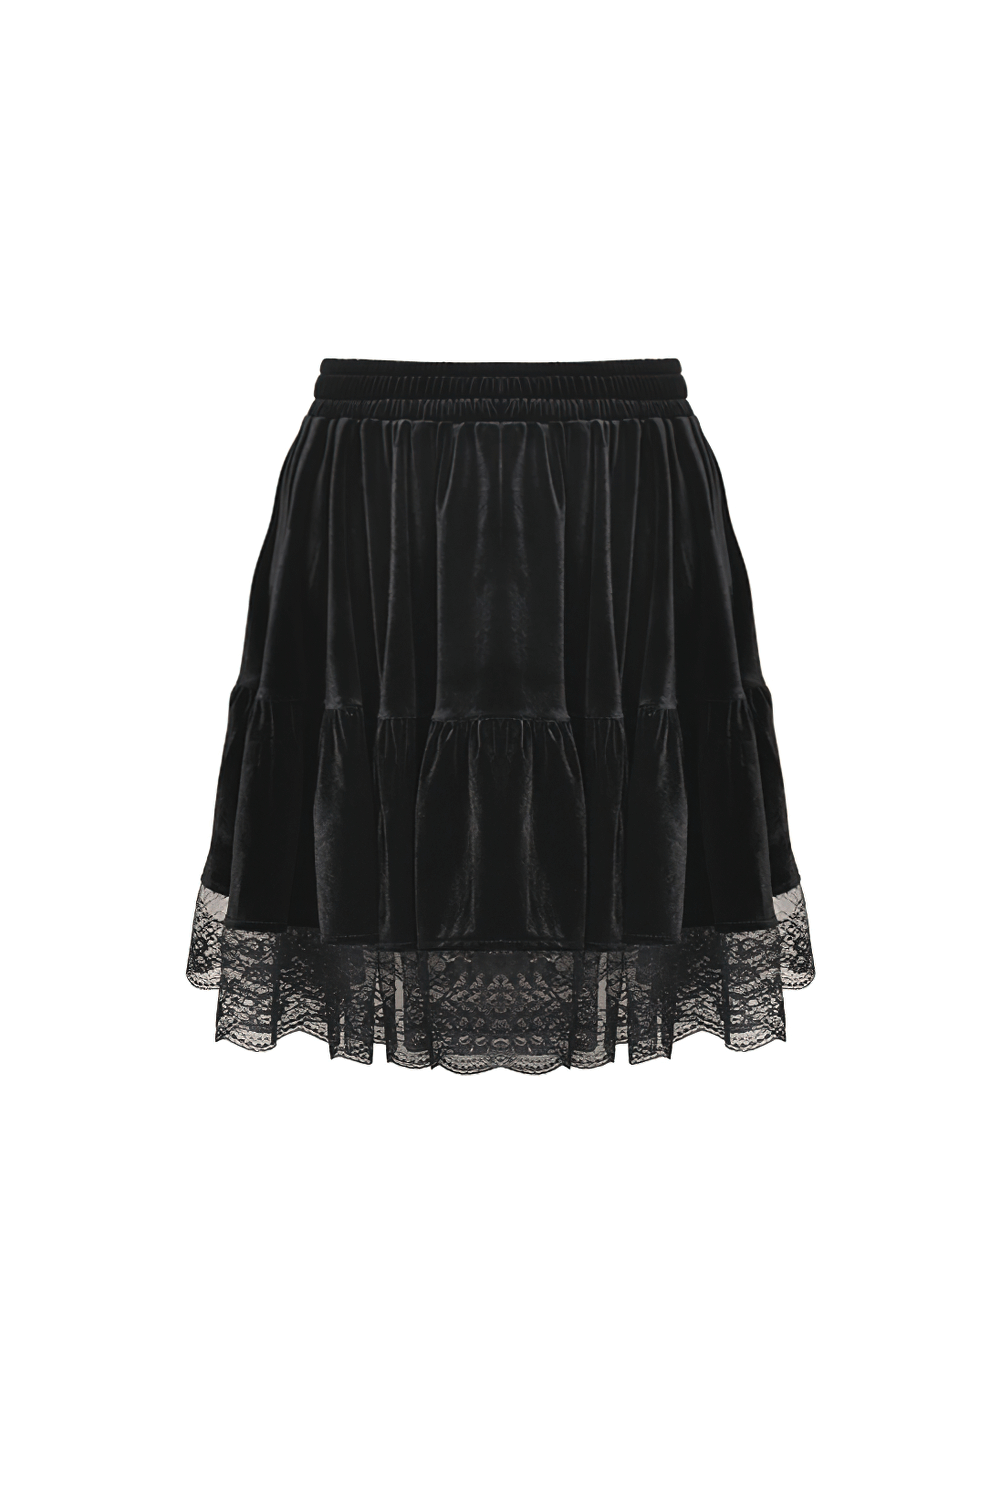 Vintage Women's Velvet Mini Skirt with Ruffle Lace Hem